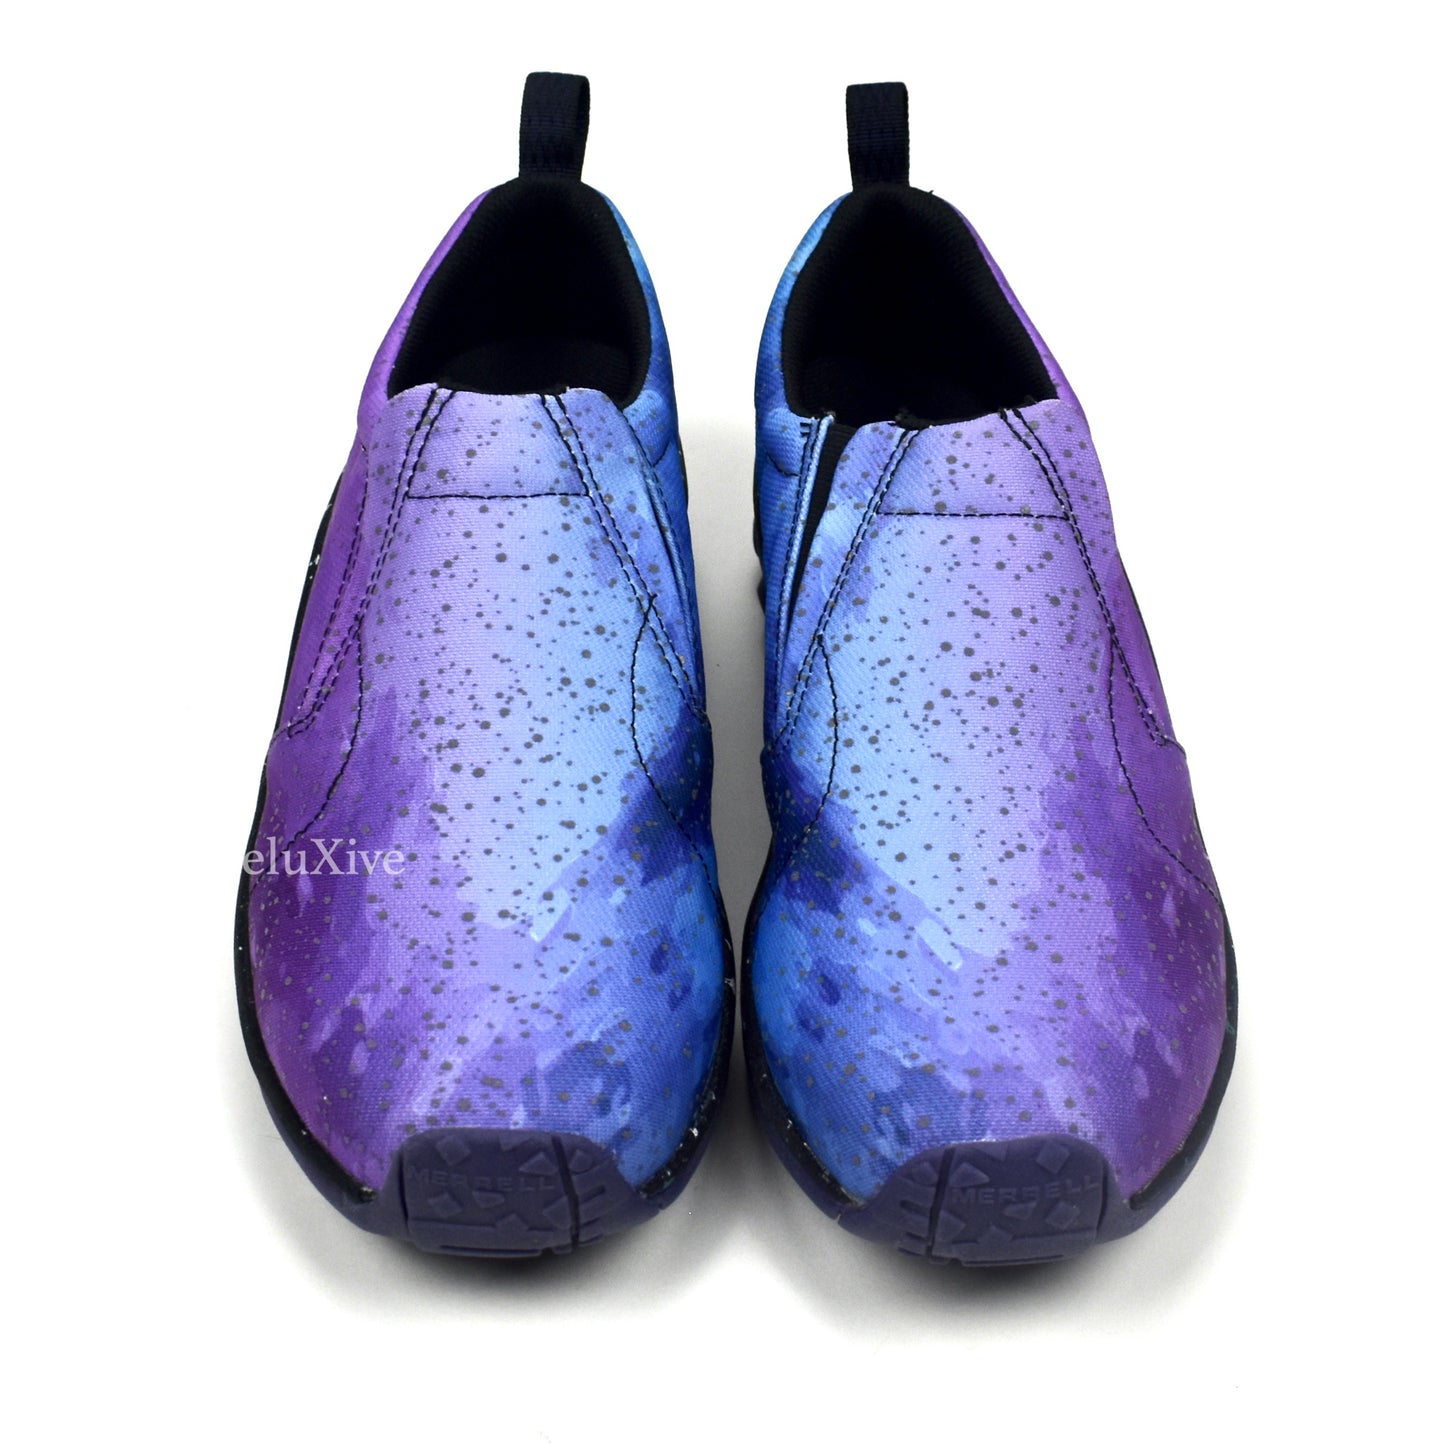 Merrell - Jungle Moc Shoes (Galaxy Print)